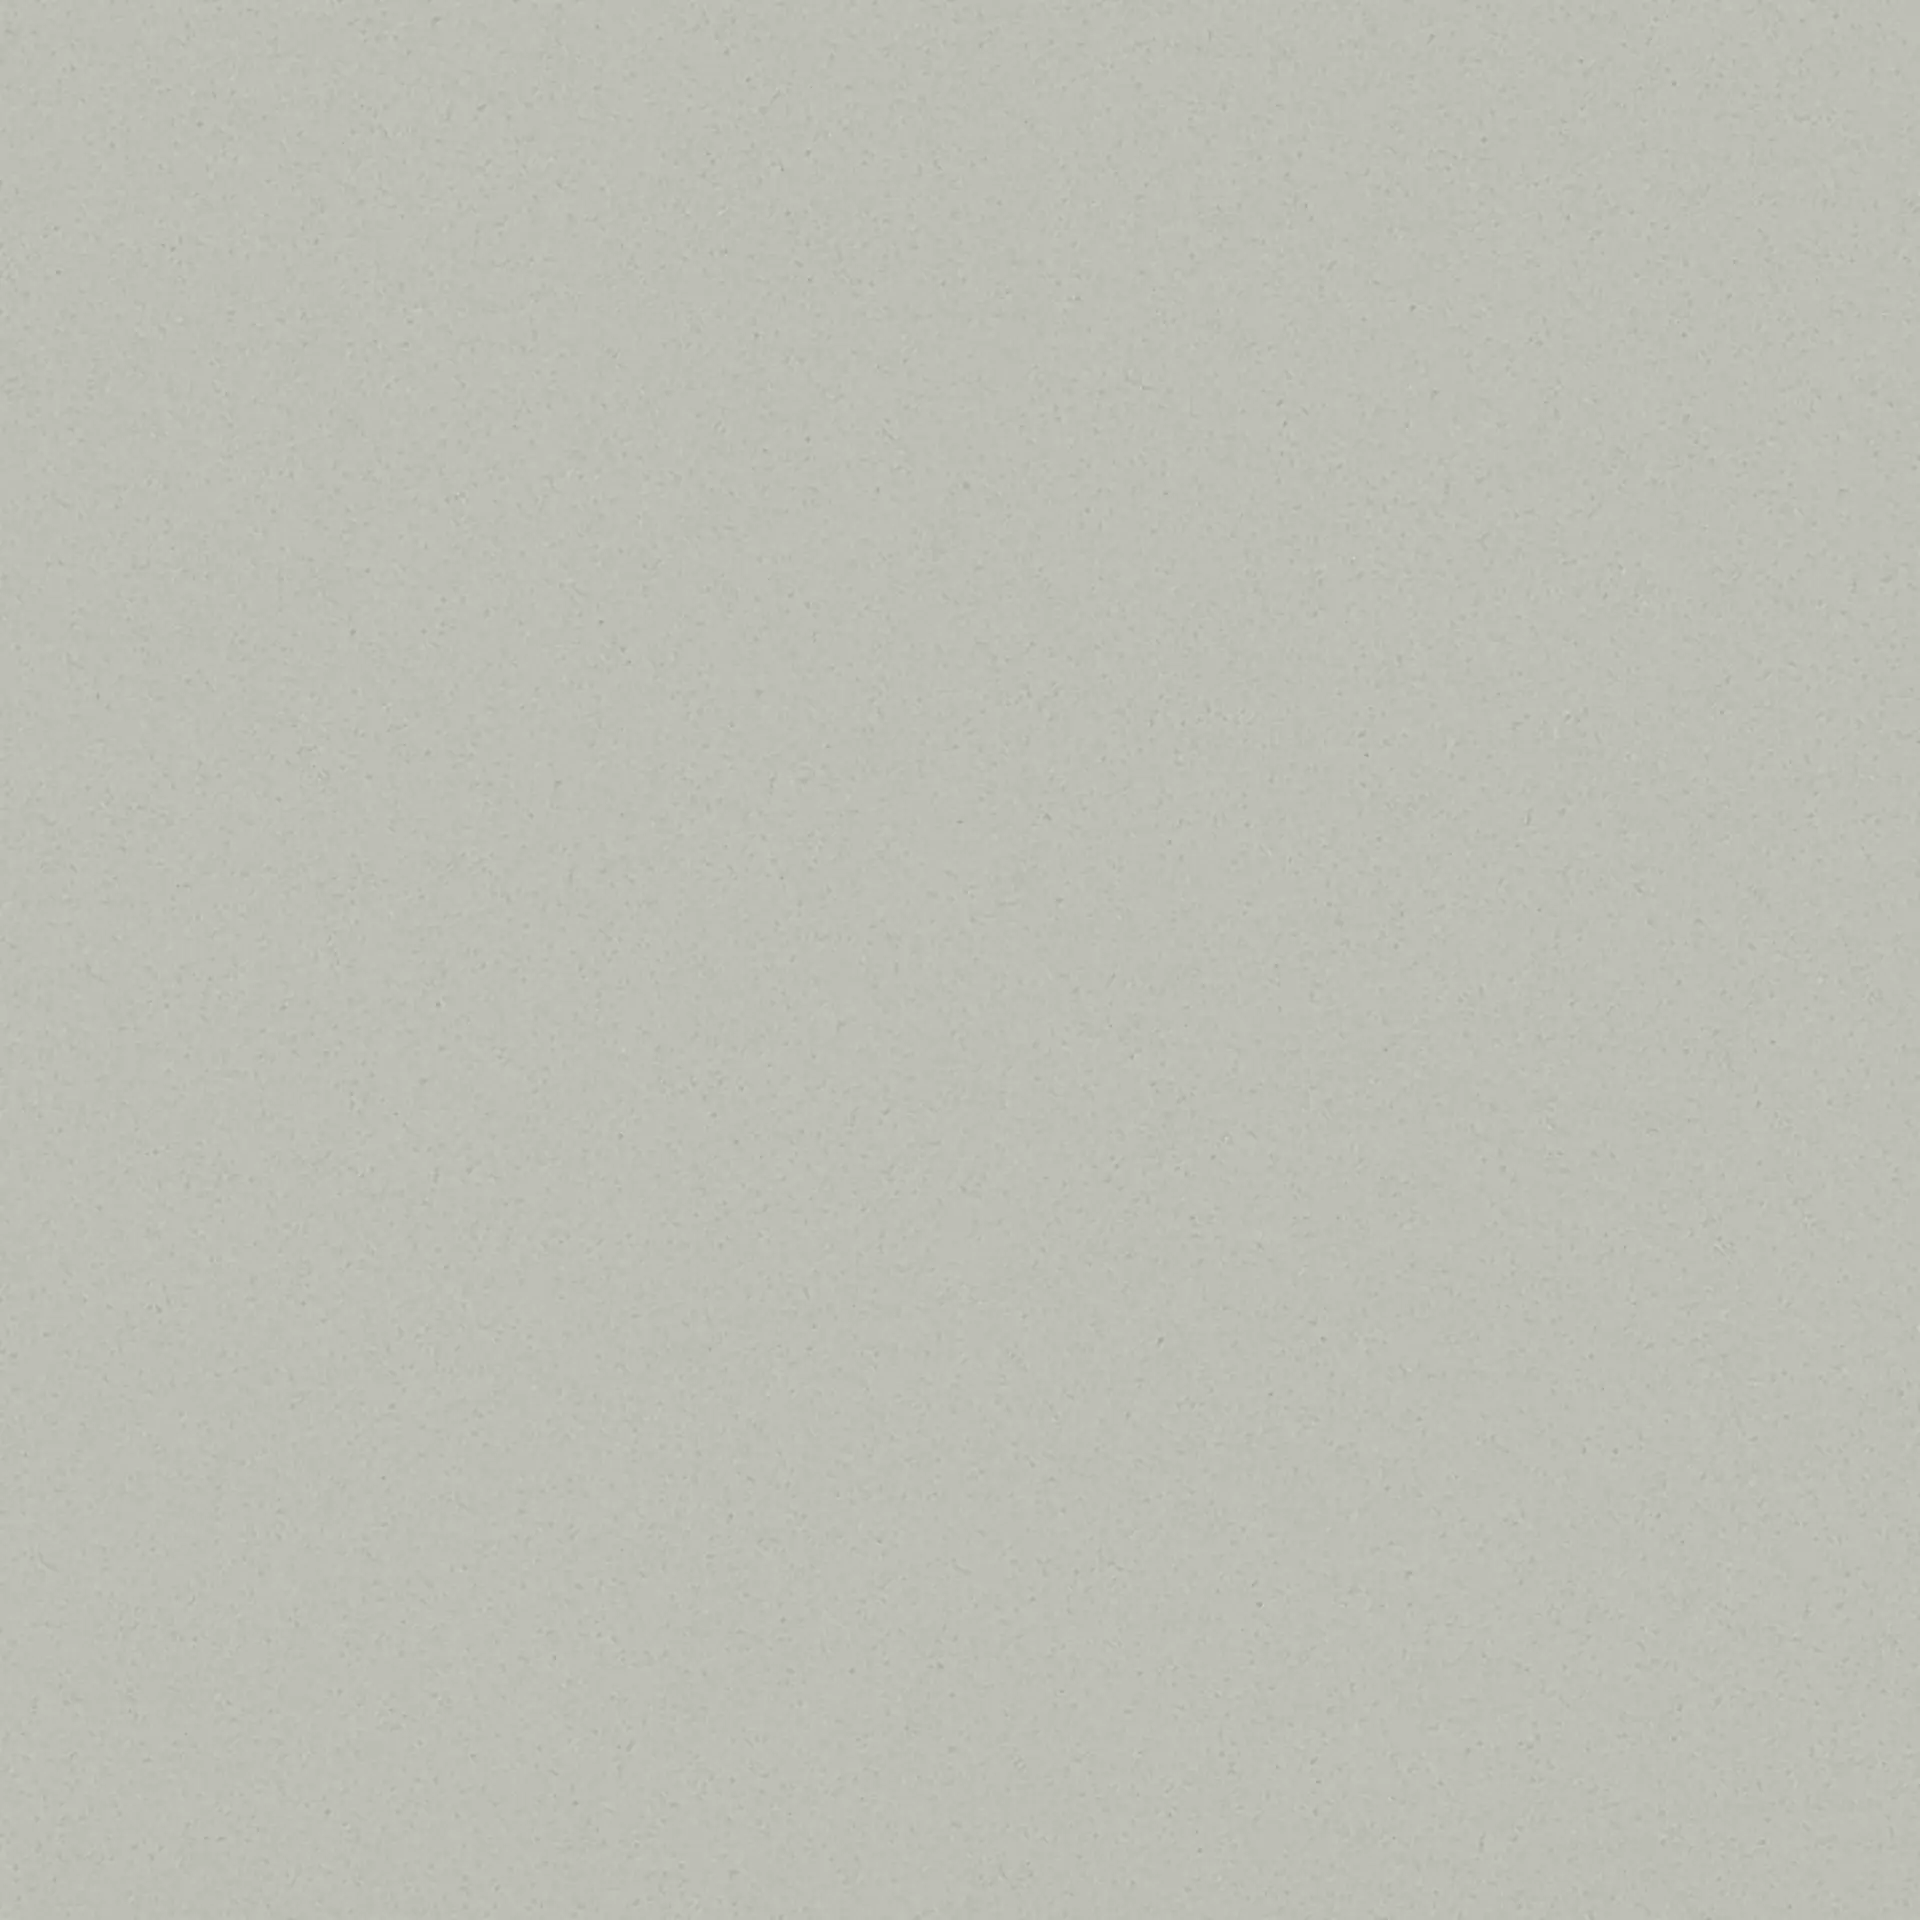 Wandfliese,Bodenfliese Villeroy & Boch Pro Architectura 3.0 Secret Grey Matt Secret Grey 2014-C460 matt 60x60cm 9mm